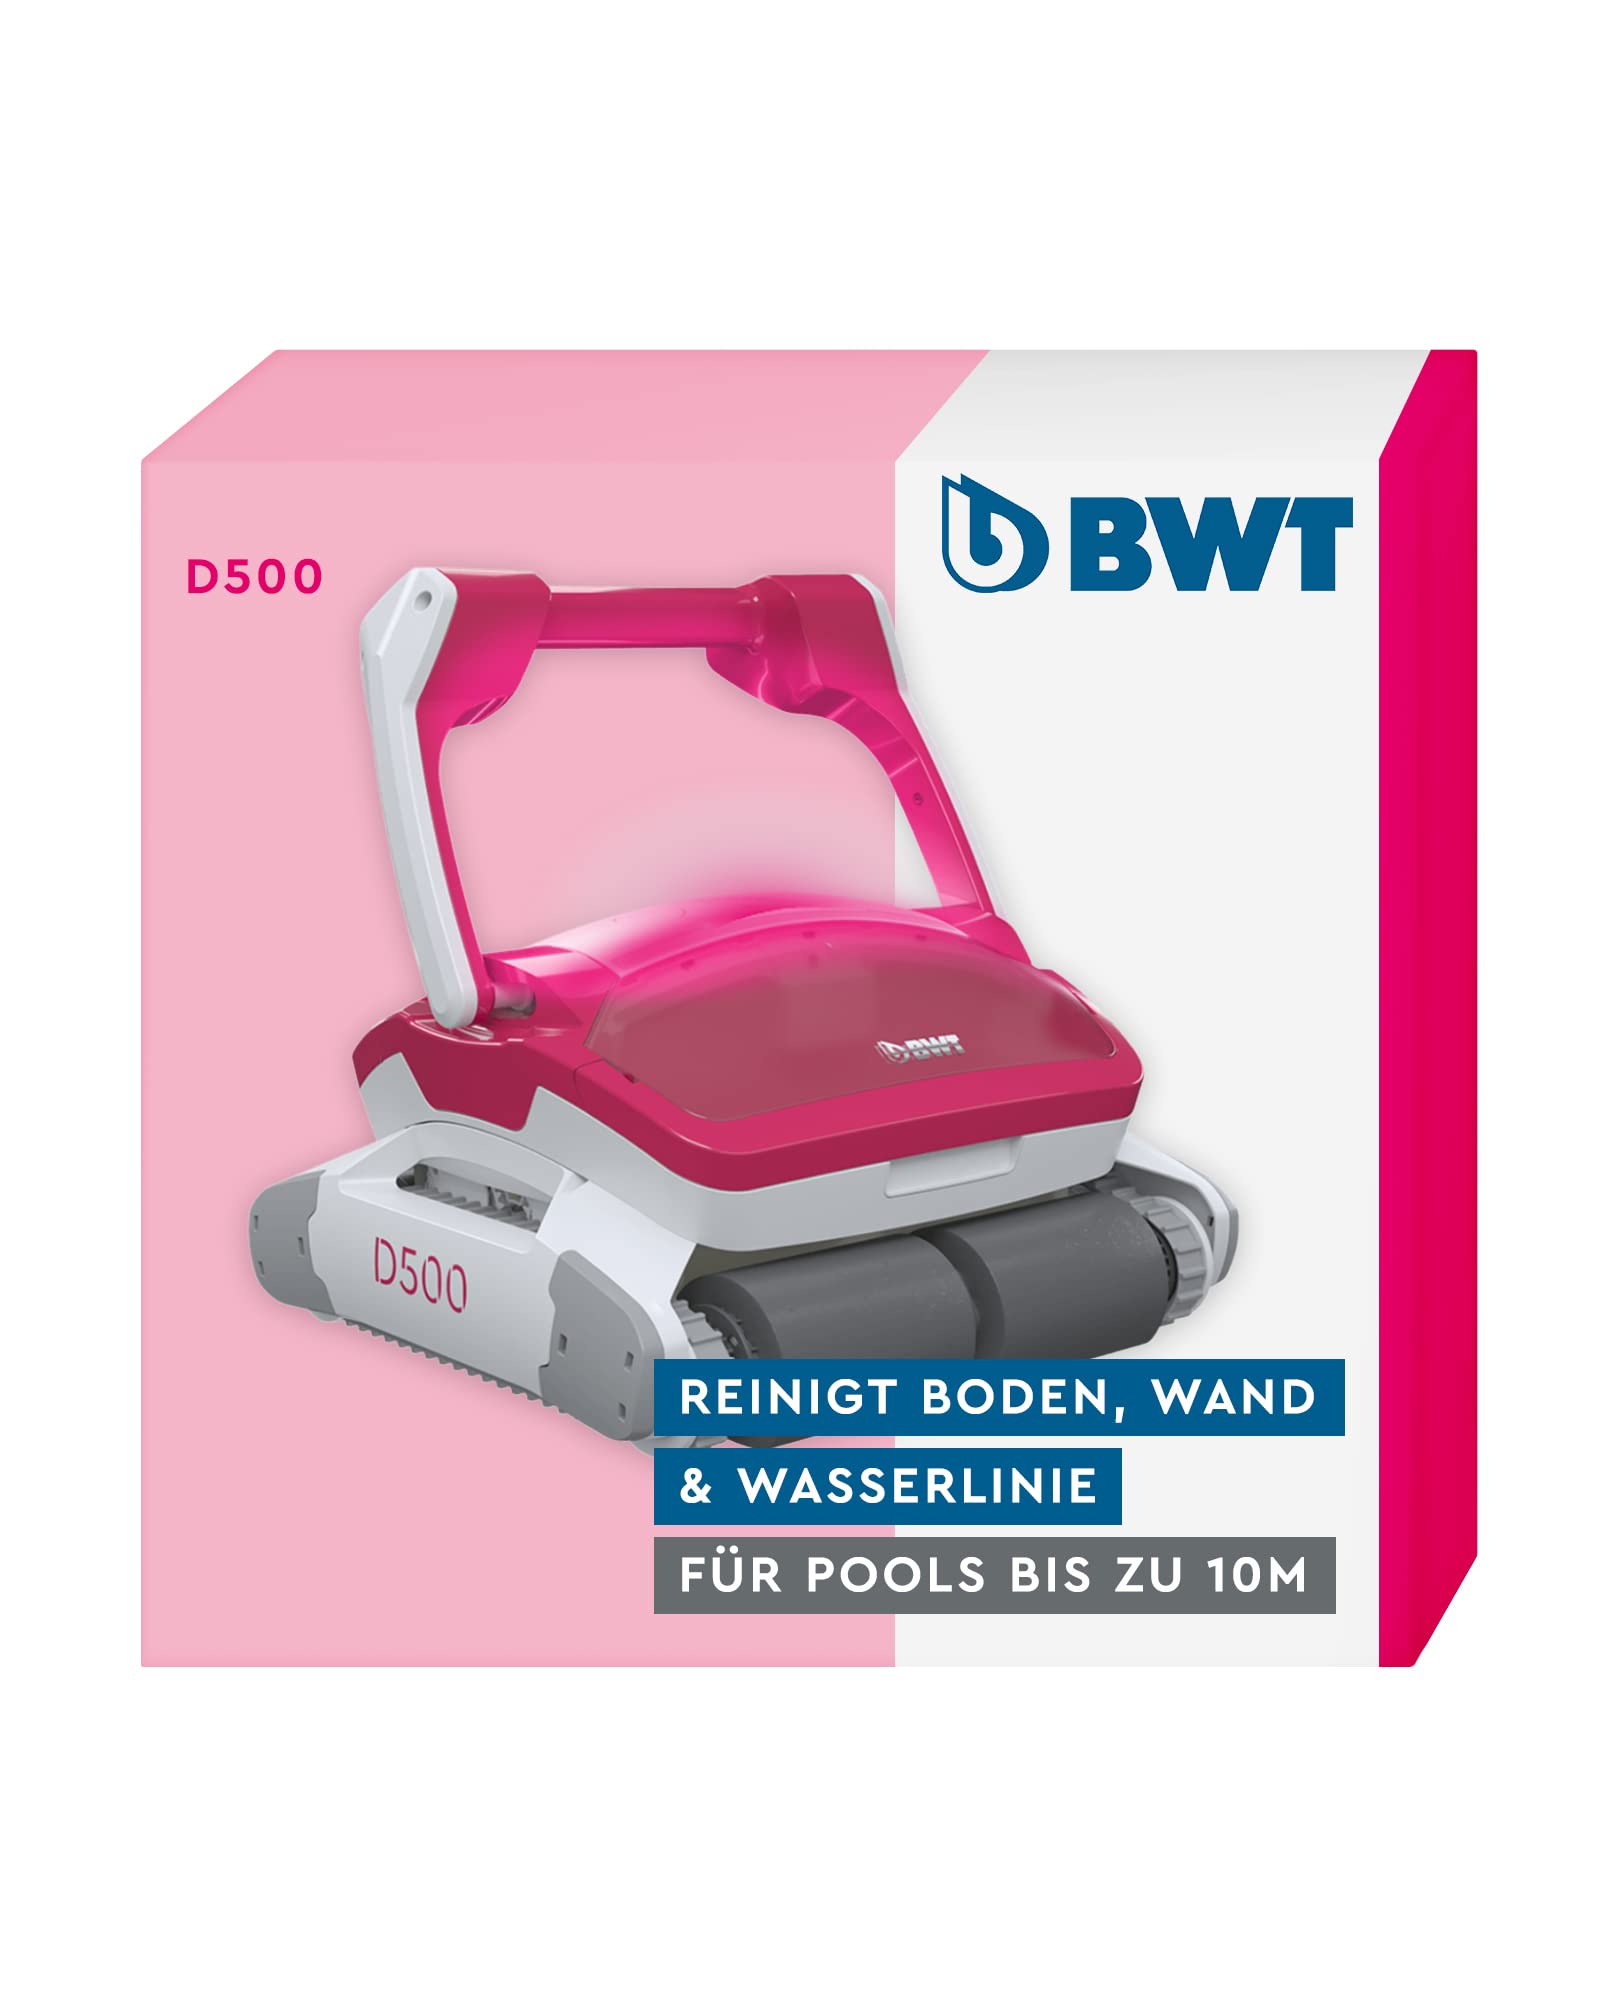 BWT Pool Roboter D500 | Optimale Reinigung Von Boden, Wand & Wasserlinie Für Pools Bis 10 m | Beste Filterleistung | Smart Navigation | Ultimate Power Technologie | Pinke Led-Beleuchtung, Magenta